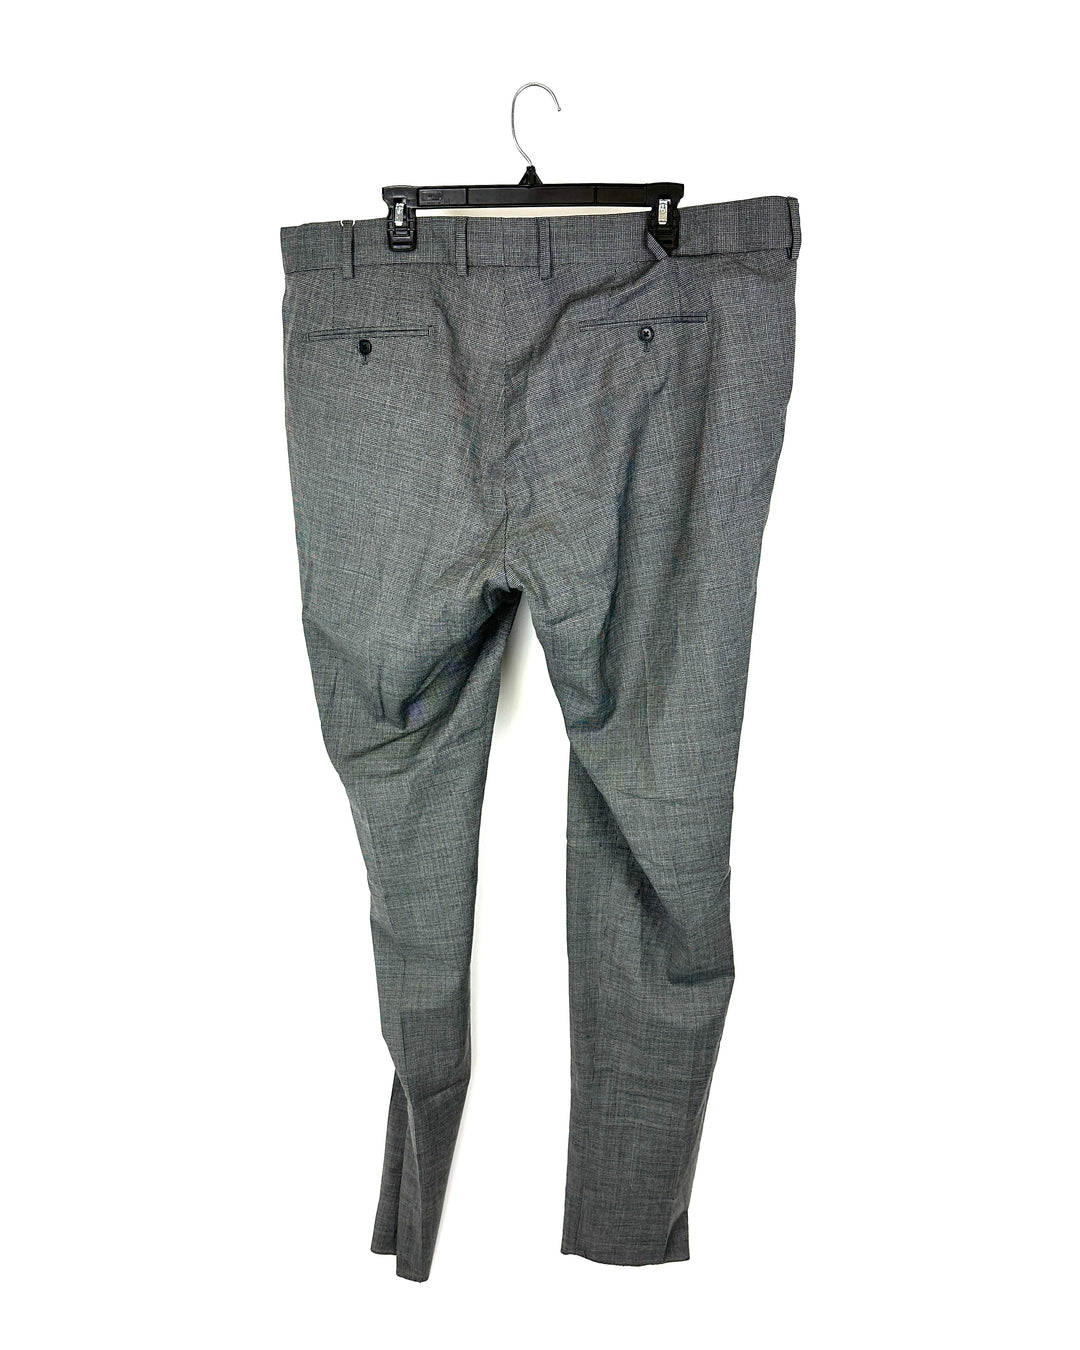 MENS Houndstooth Black/Grey Standard Fit Dress Pants - 42/39